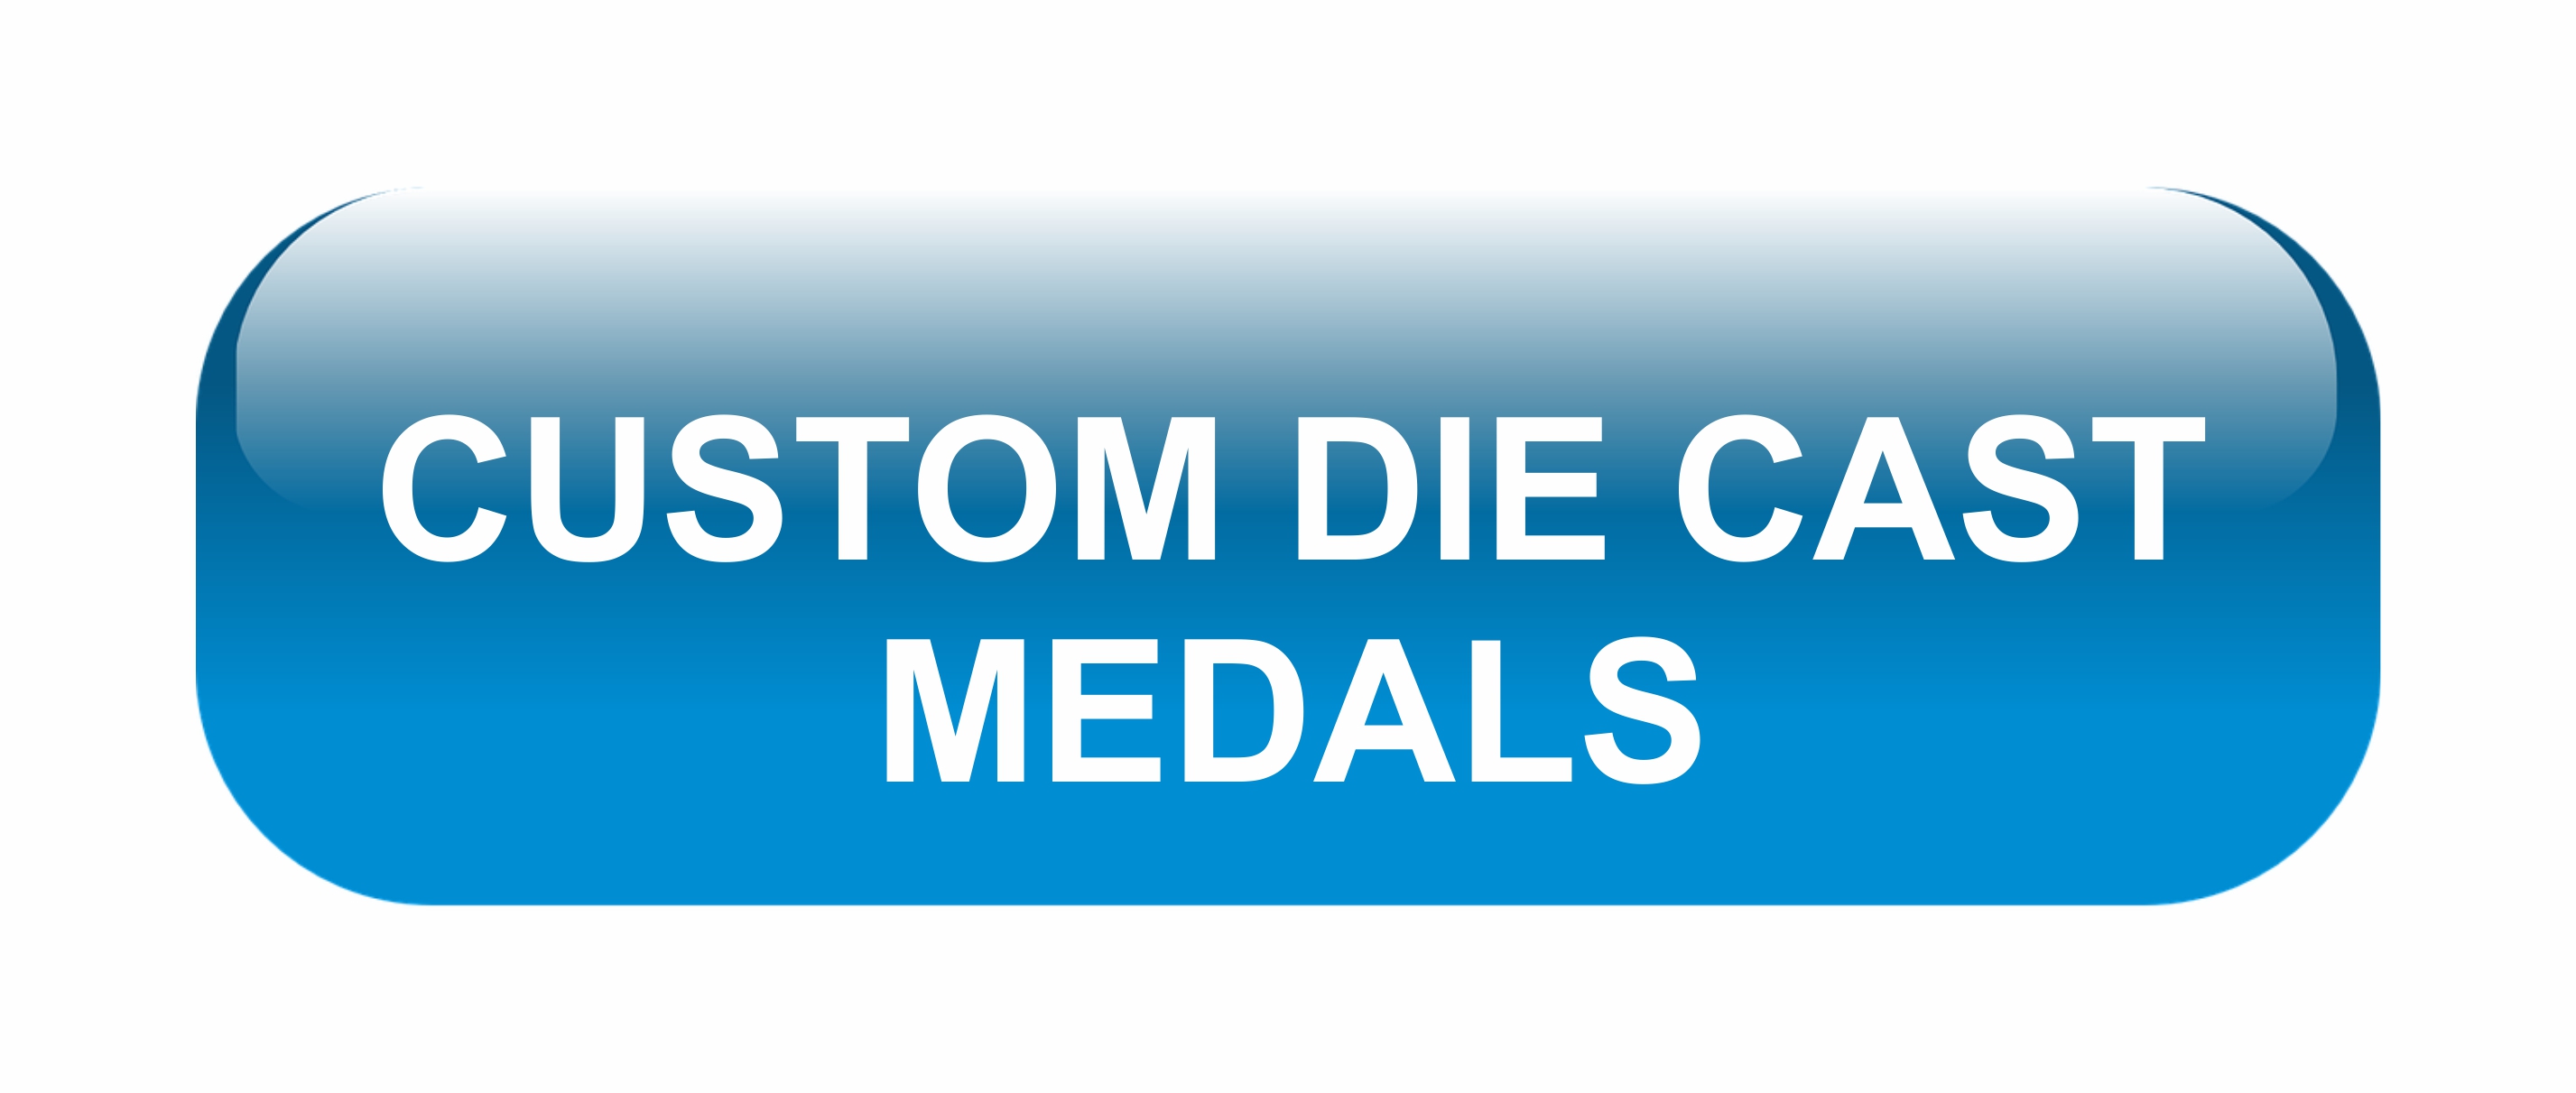 photo gallery of custom die cast medals